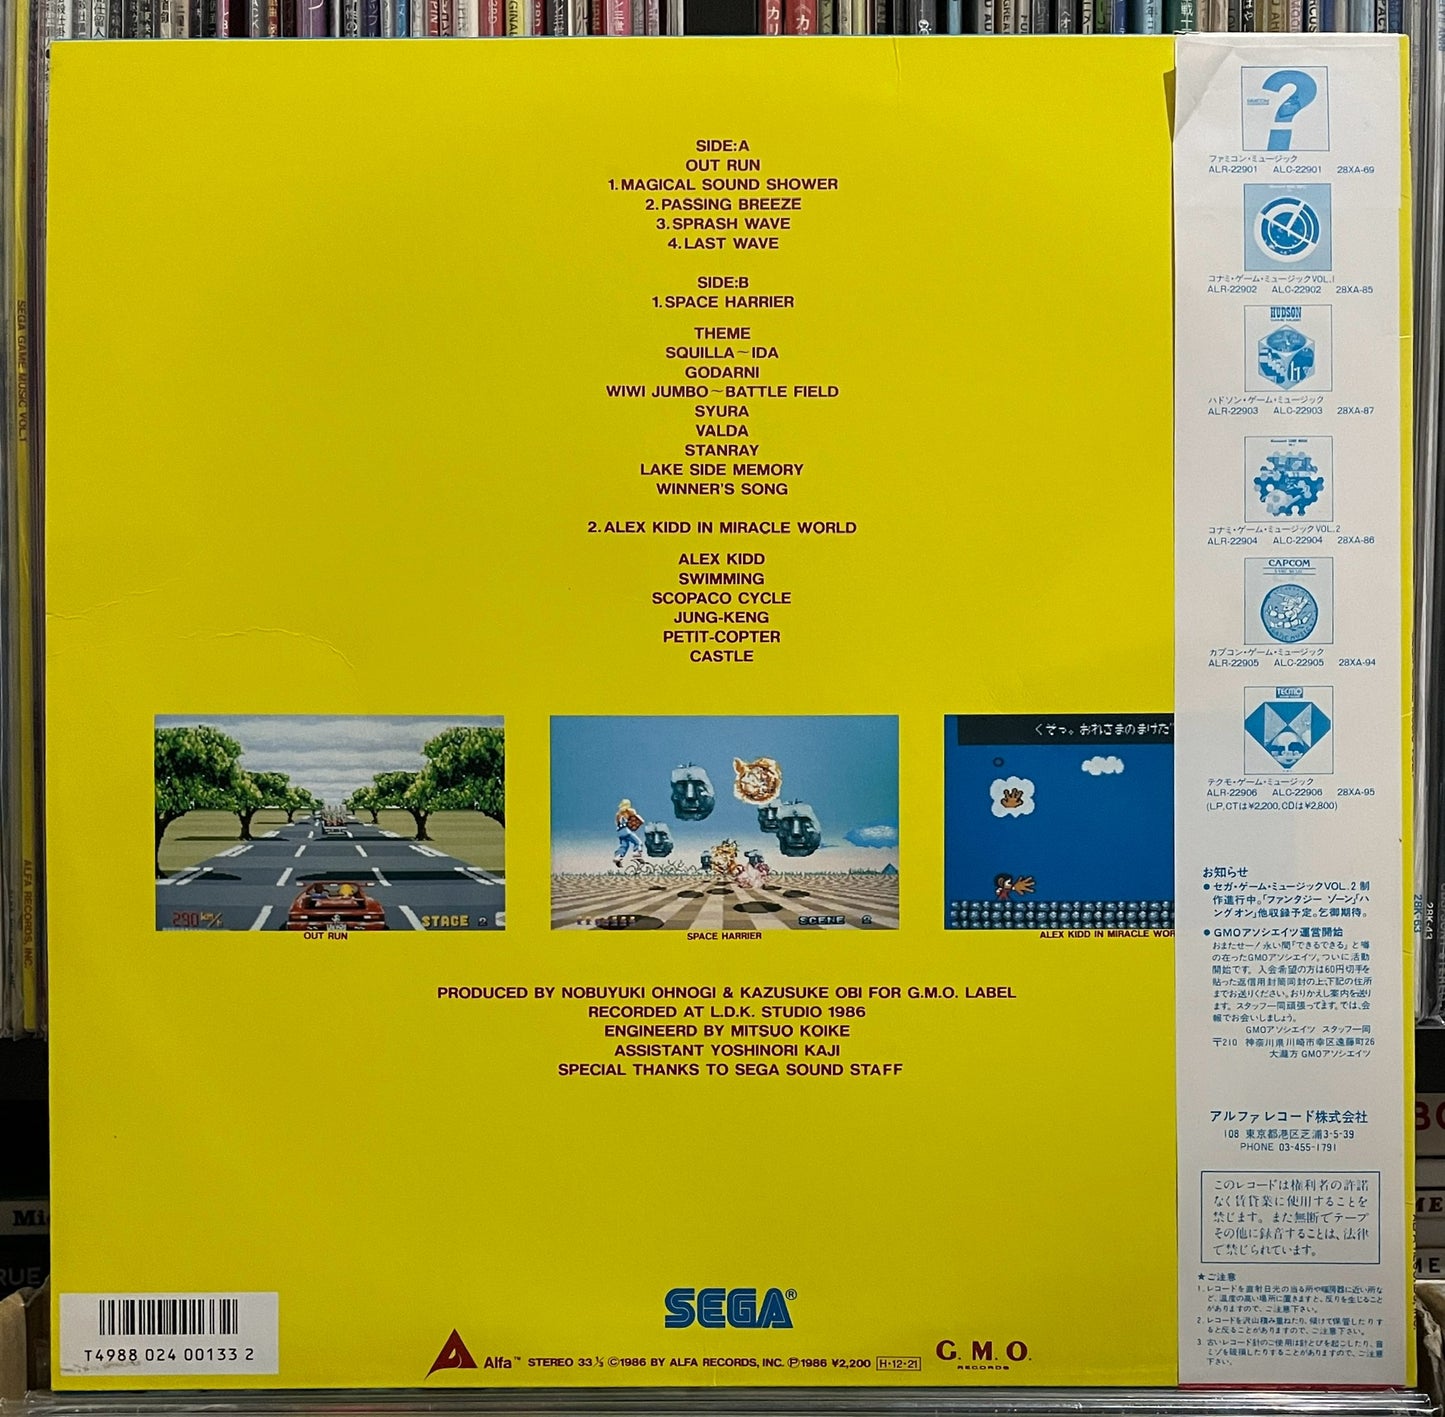 Sega Game Music Vol. 1 (1986)